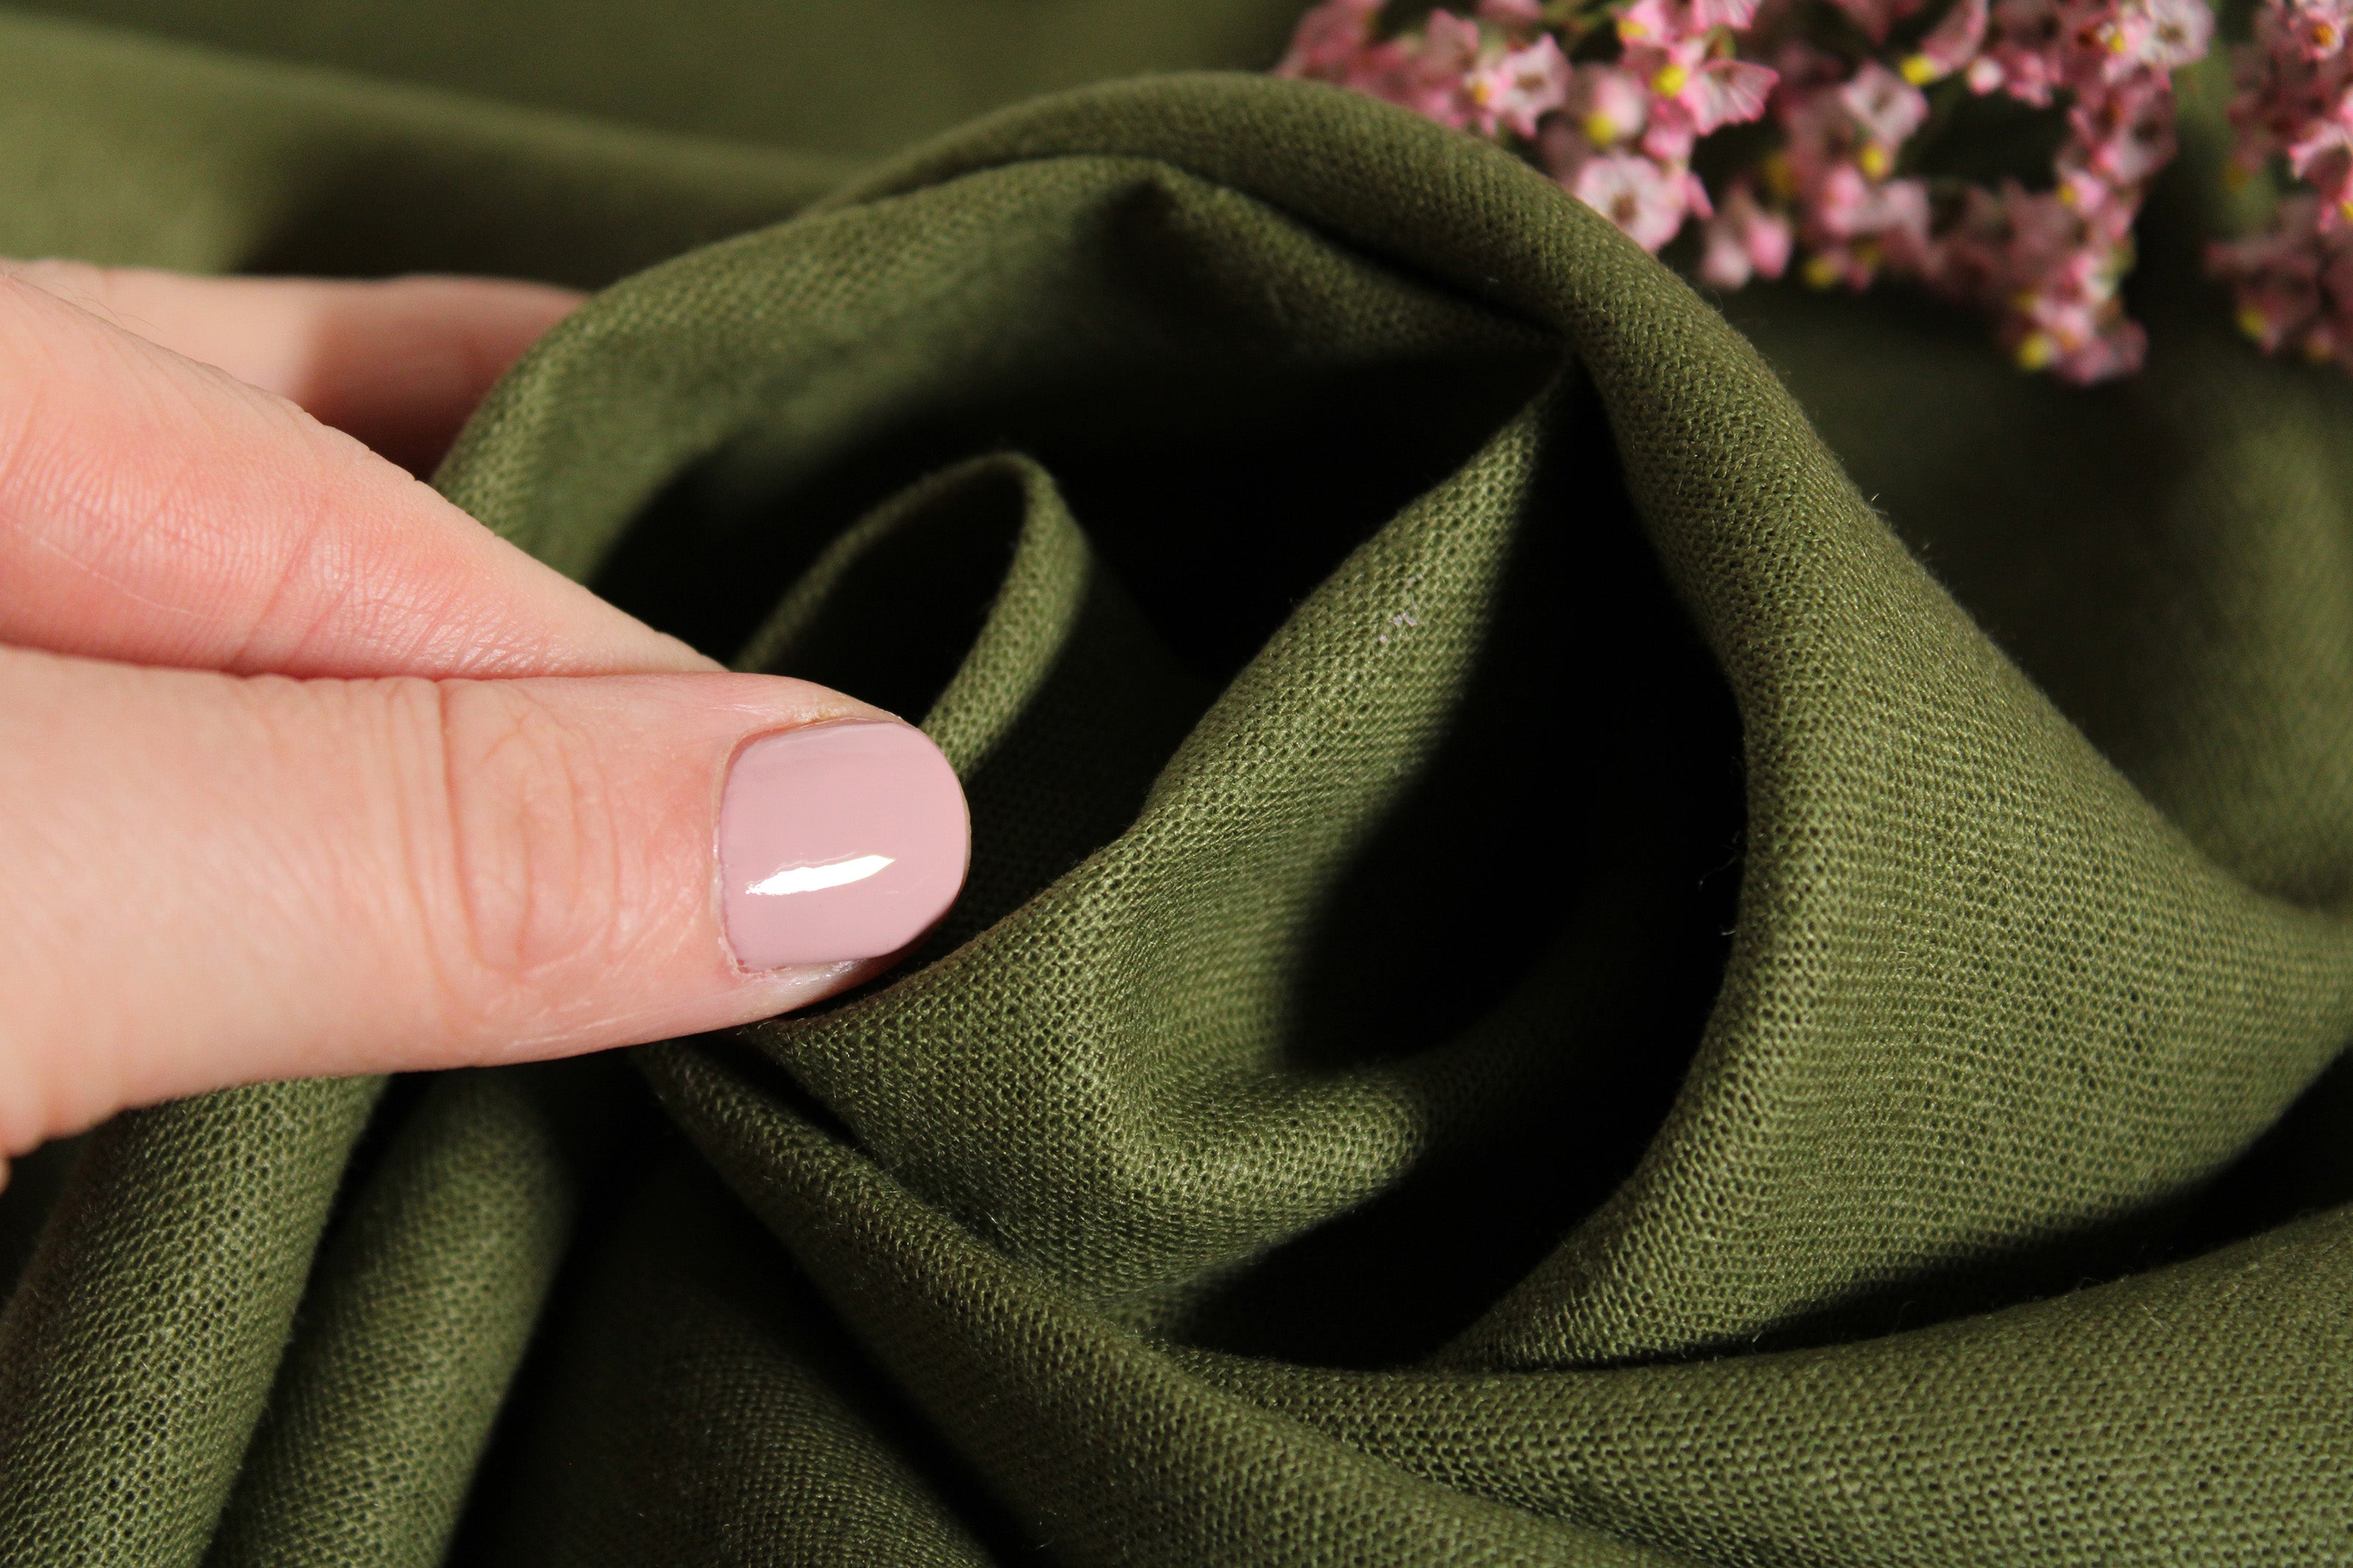 NEW LINEN FABRIC COLLECTION!!! / 100% Linen Fabric by the Yard / Terrarium moss Linen Fabric / Buy Linen Online